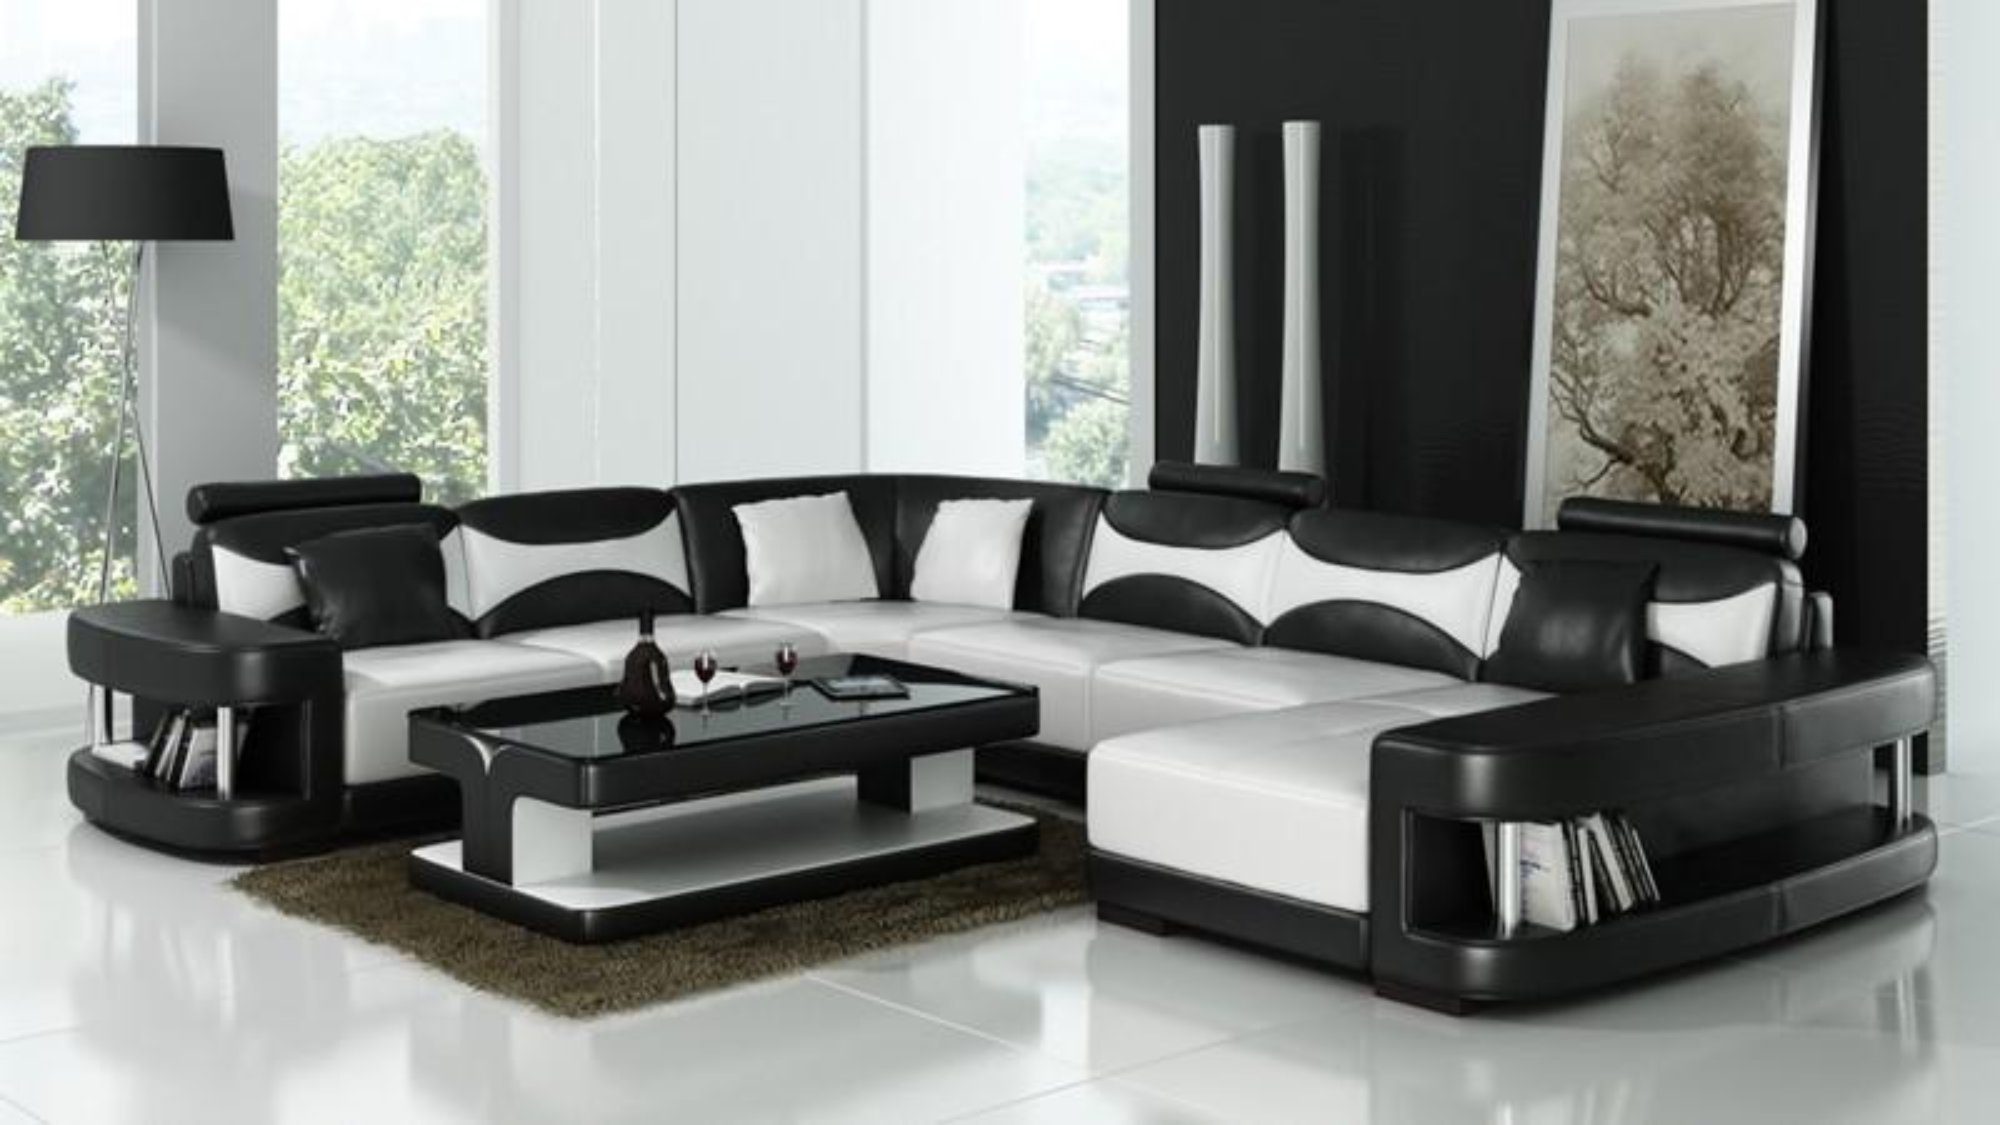 JVmoebel Ecksofa XXL Wohnlandschaft U Form Ecksofa Sofa Couch Polster Leder Sofas, Made in Europe Schwarz/Weiß